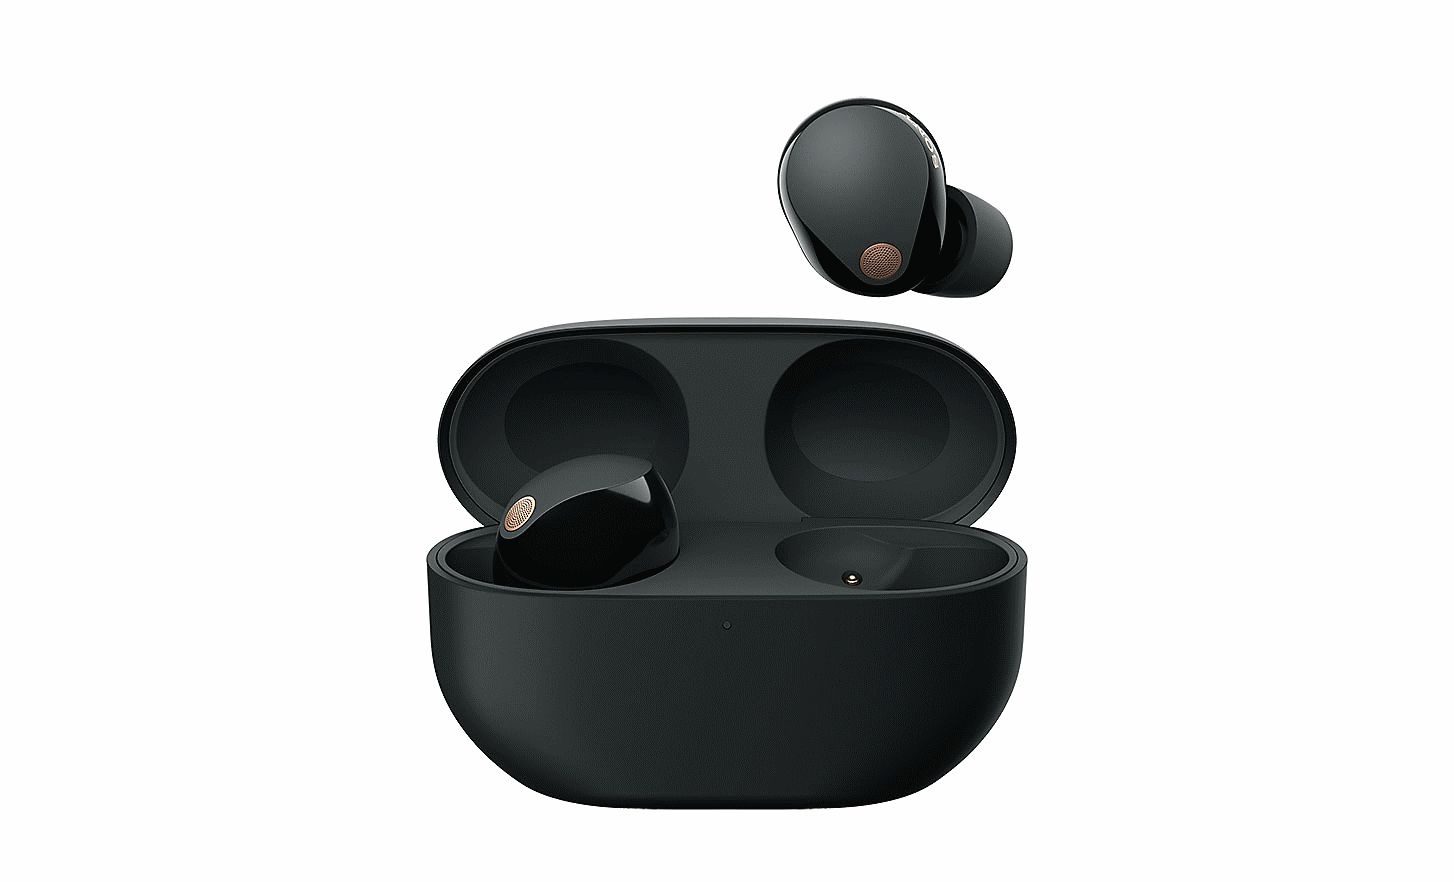 Bild der WF-1000XM5 Kopfhörer in ihrem Etui mit geöffnetem Deckel, wobei ein Kopfhörer über dem Etui schwebt